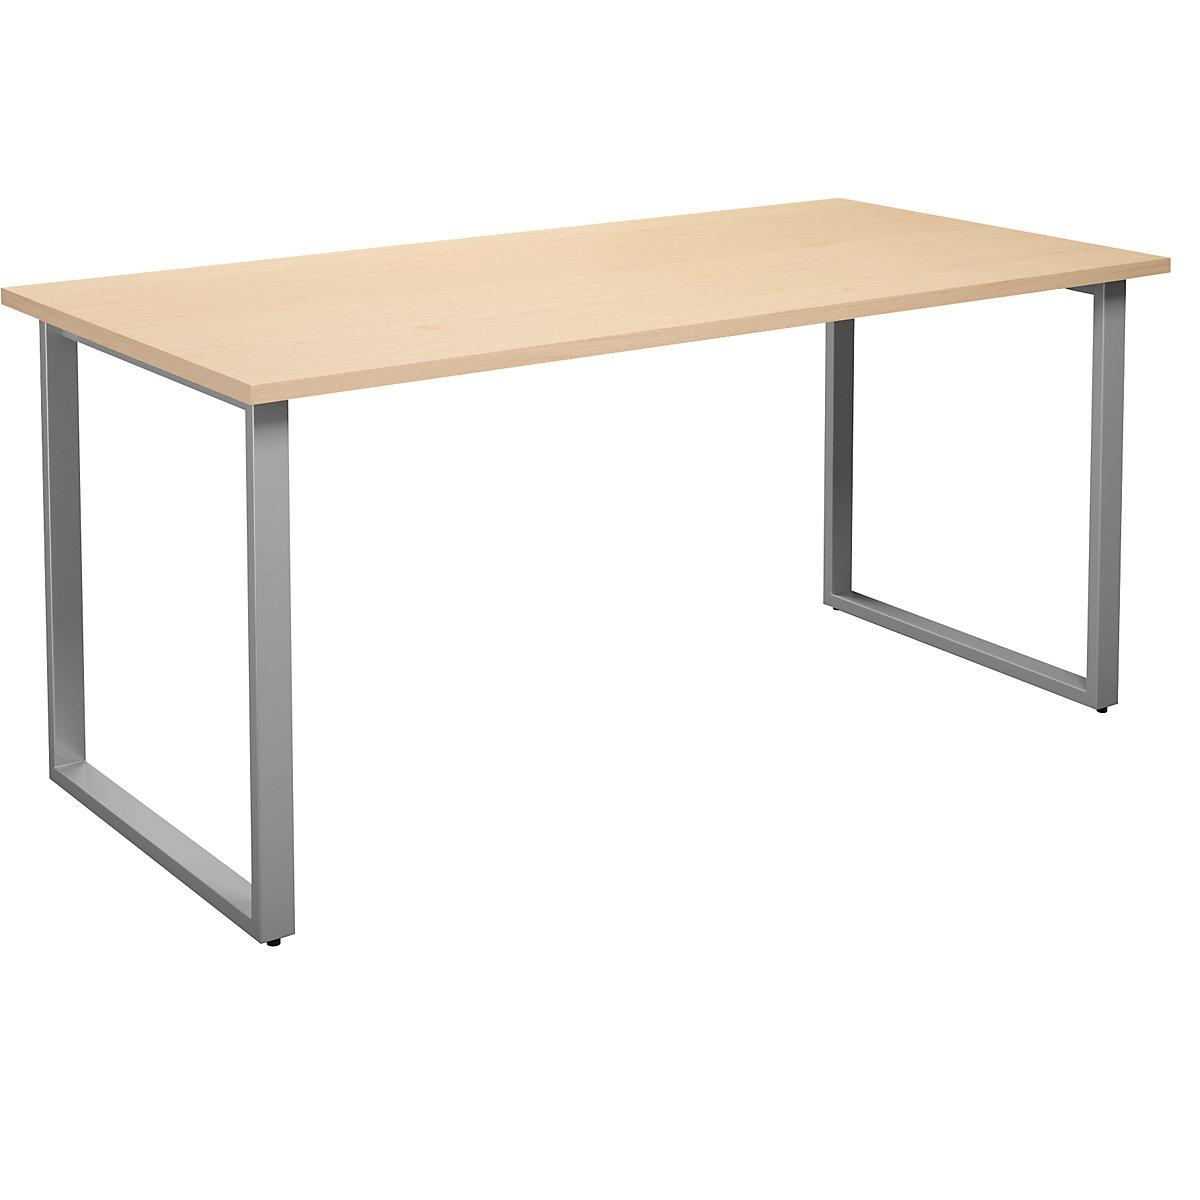 DUO-O univerzális asztal, egyenes asztallappal